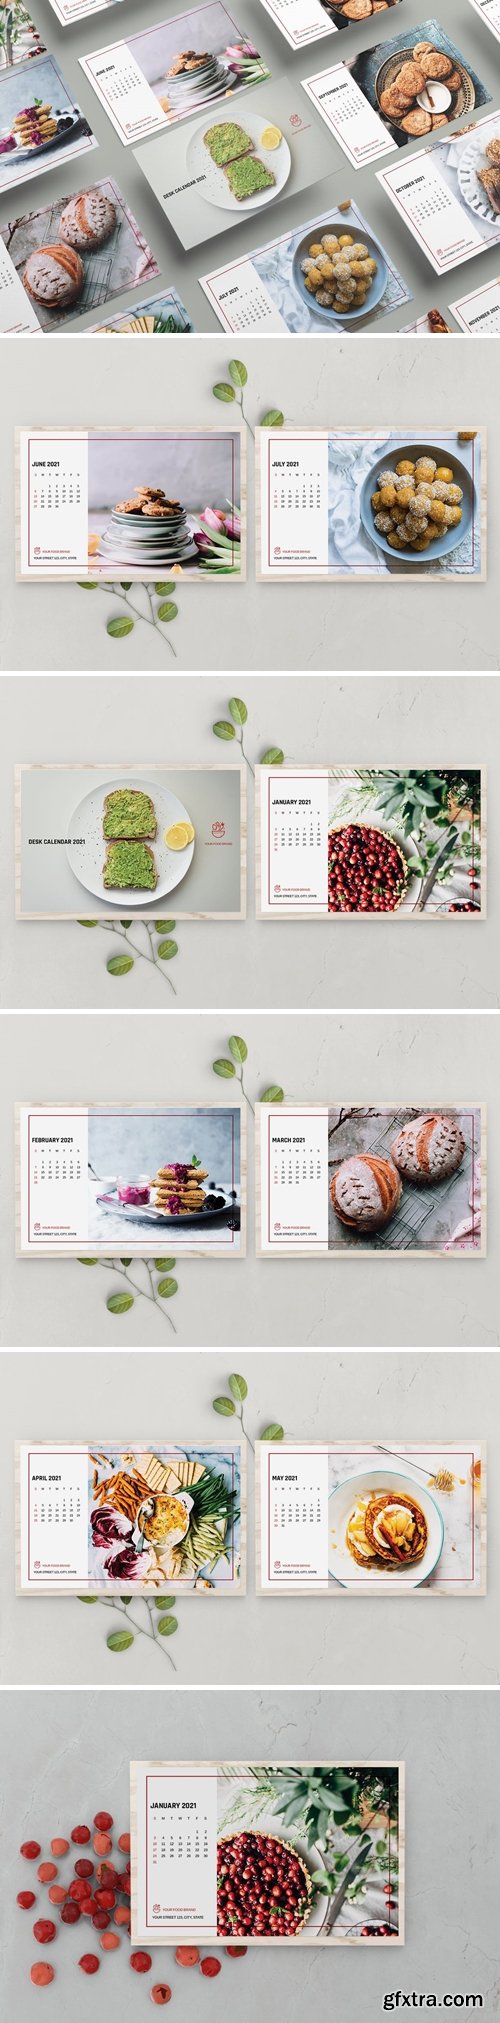 Food Desk Calendar Template 2021